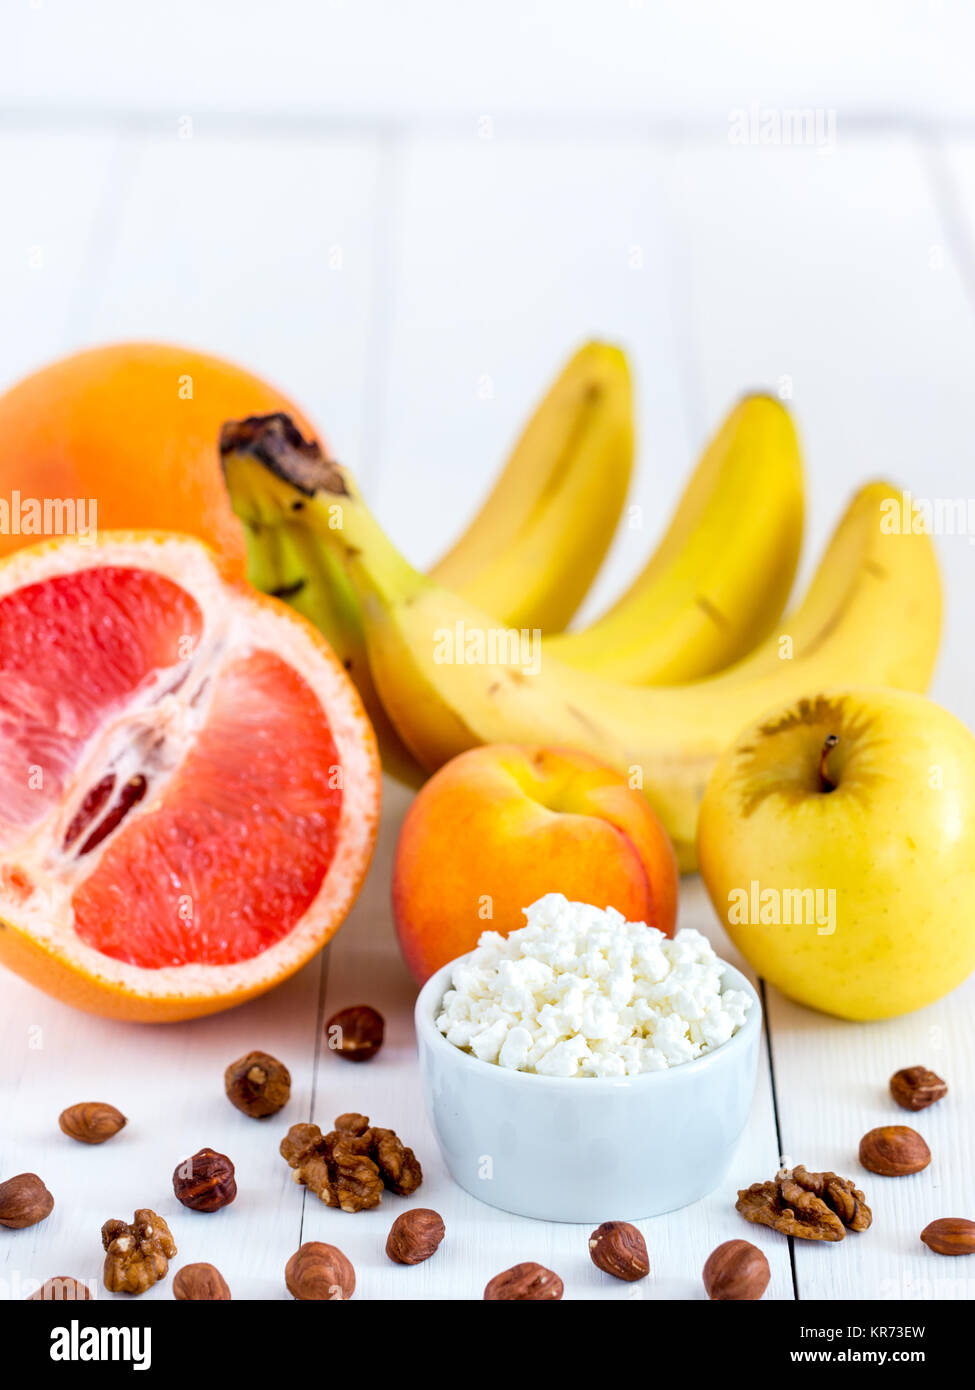 Diät Quark mit frischen Früchten und Nüssen Stockfotografie - Alamy